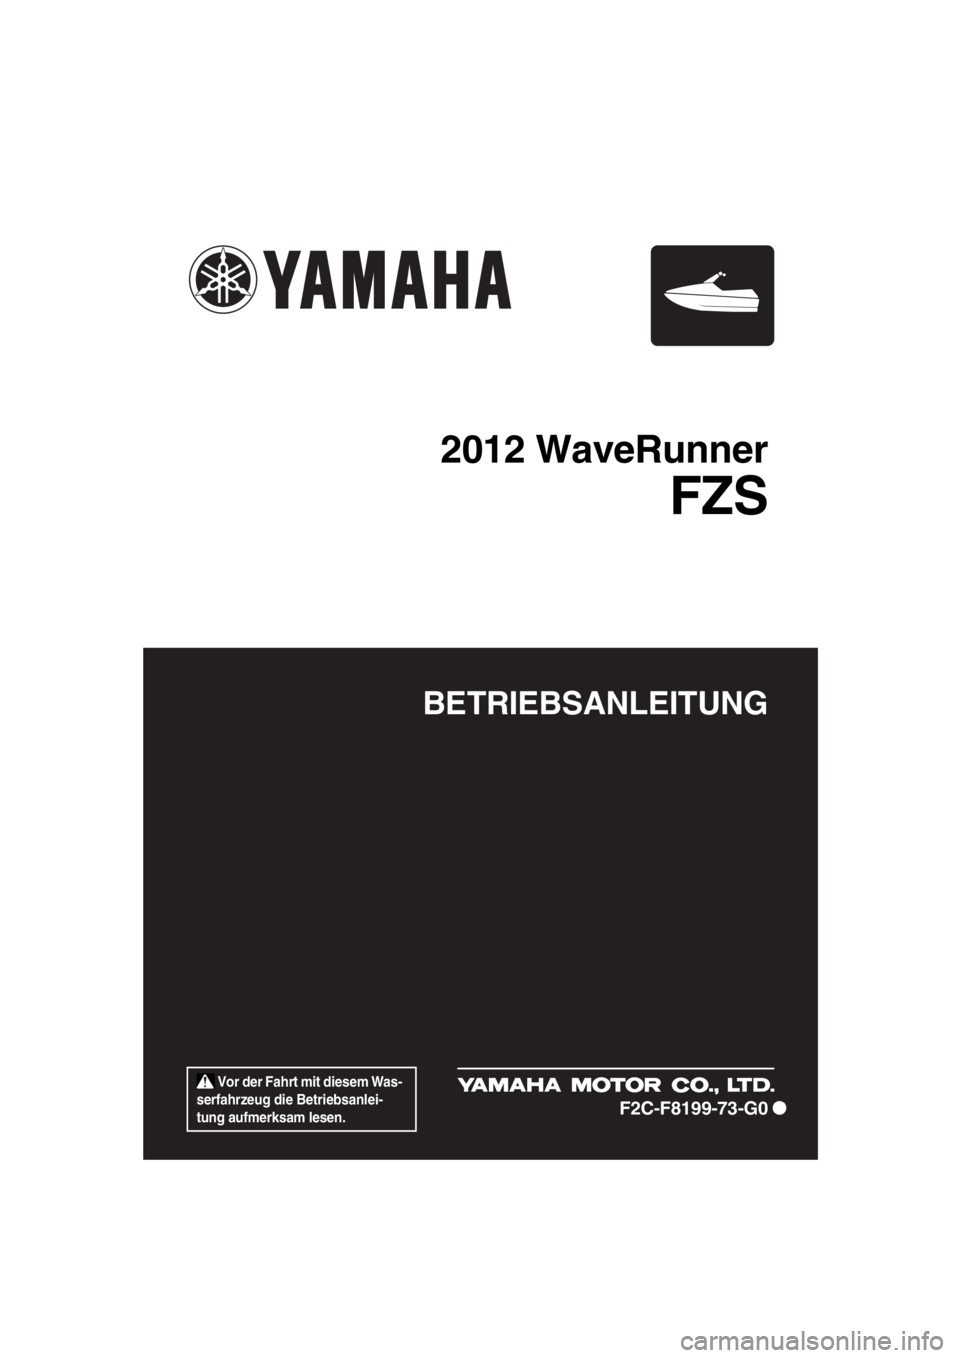 YAMAHA FZS 2012  Betriebsanleitungen (in German)  Vor der Fahrt mit diesem Was-
serfahrzeug die Betriebsanlei-
tung aufmerksam lesen.
BETRIEBSANLEITUNG
2012 WaveRunner
FZS
F2C-F8199-73-G0
UF2C73G0.book  Page 1  Wednesday, January 25, 2012  1:25 PM 